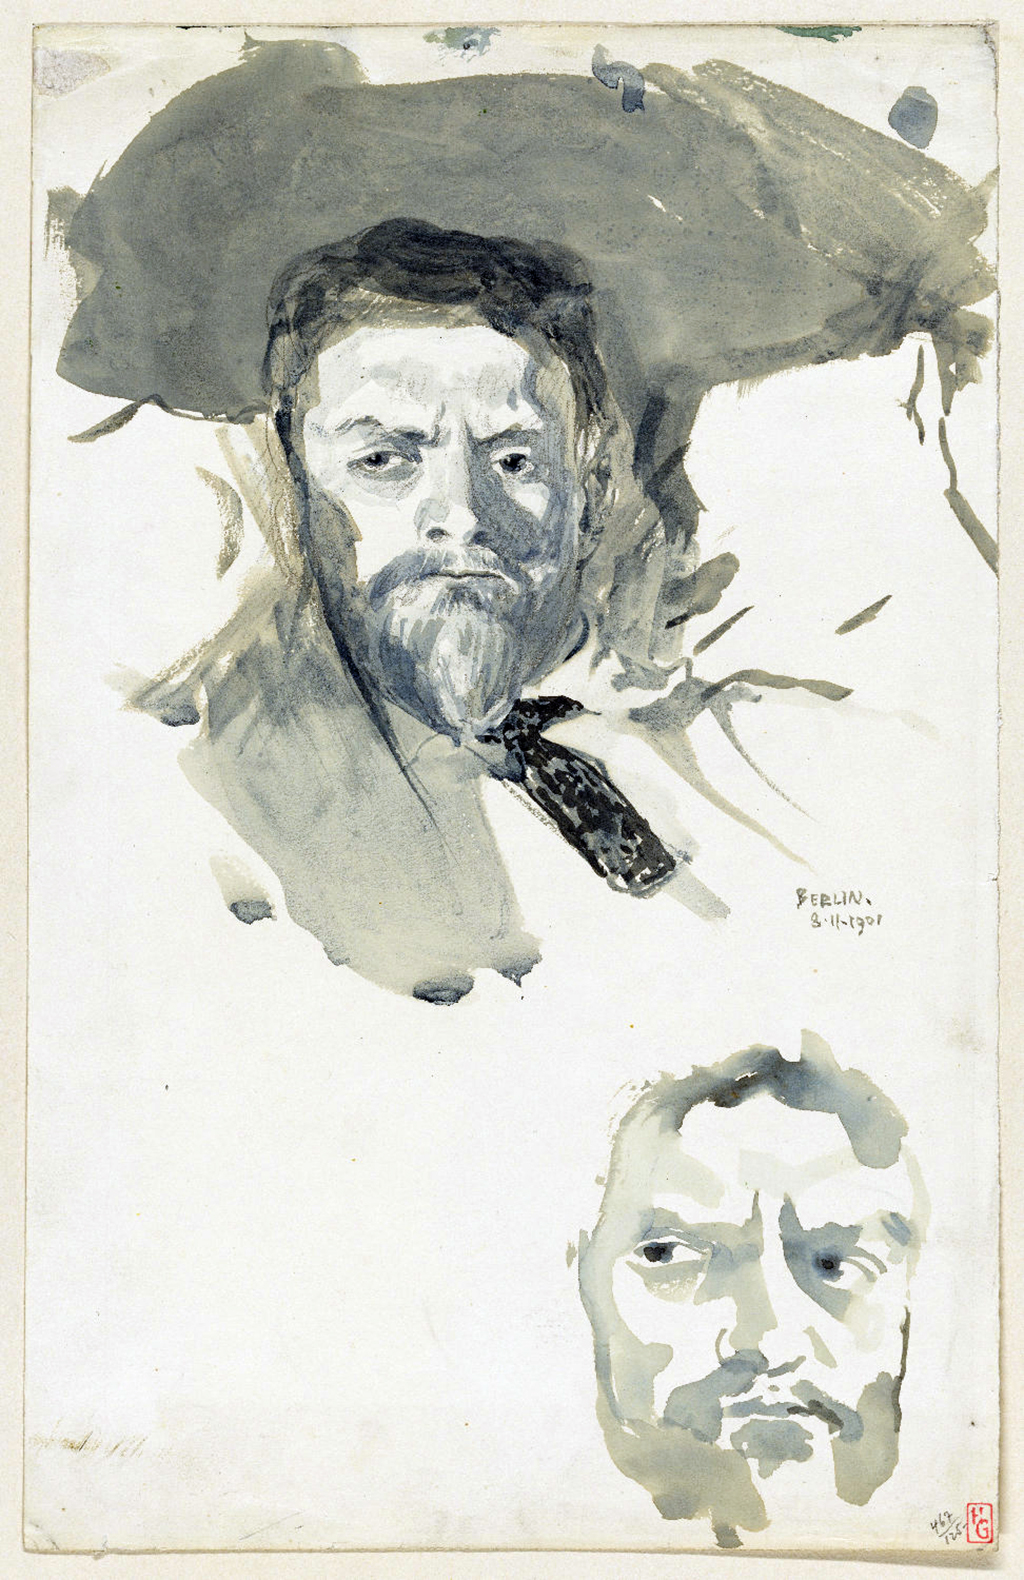 Obraz, akwarela, autoportret twarzy mężczyzny z brodą